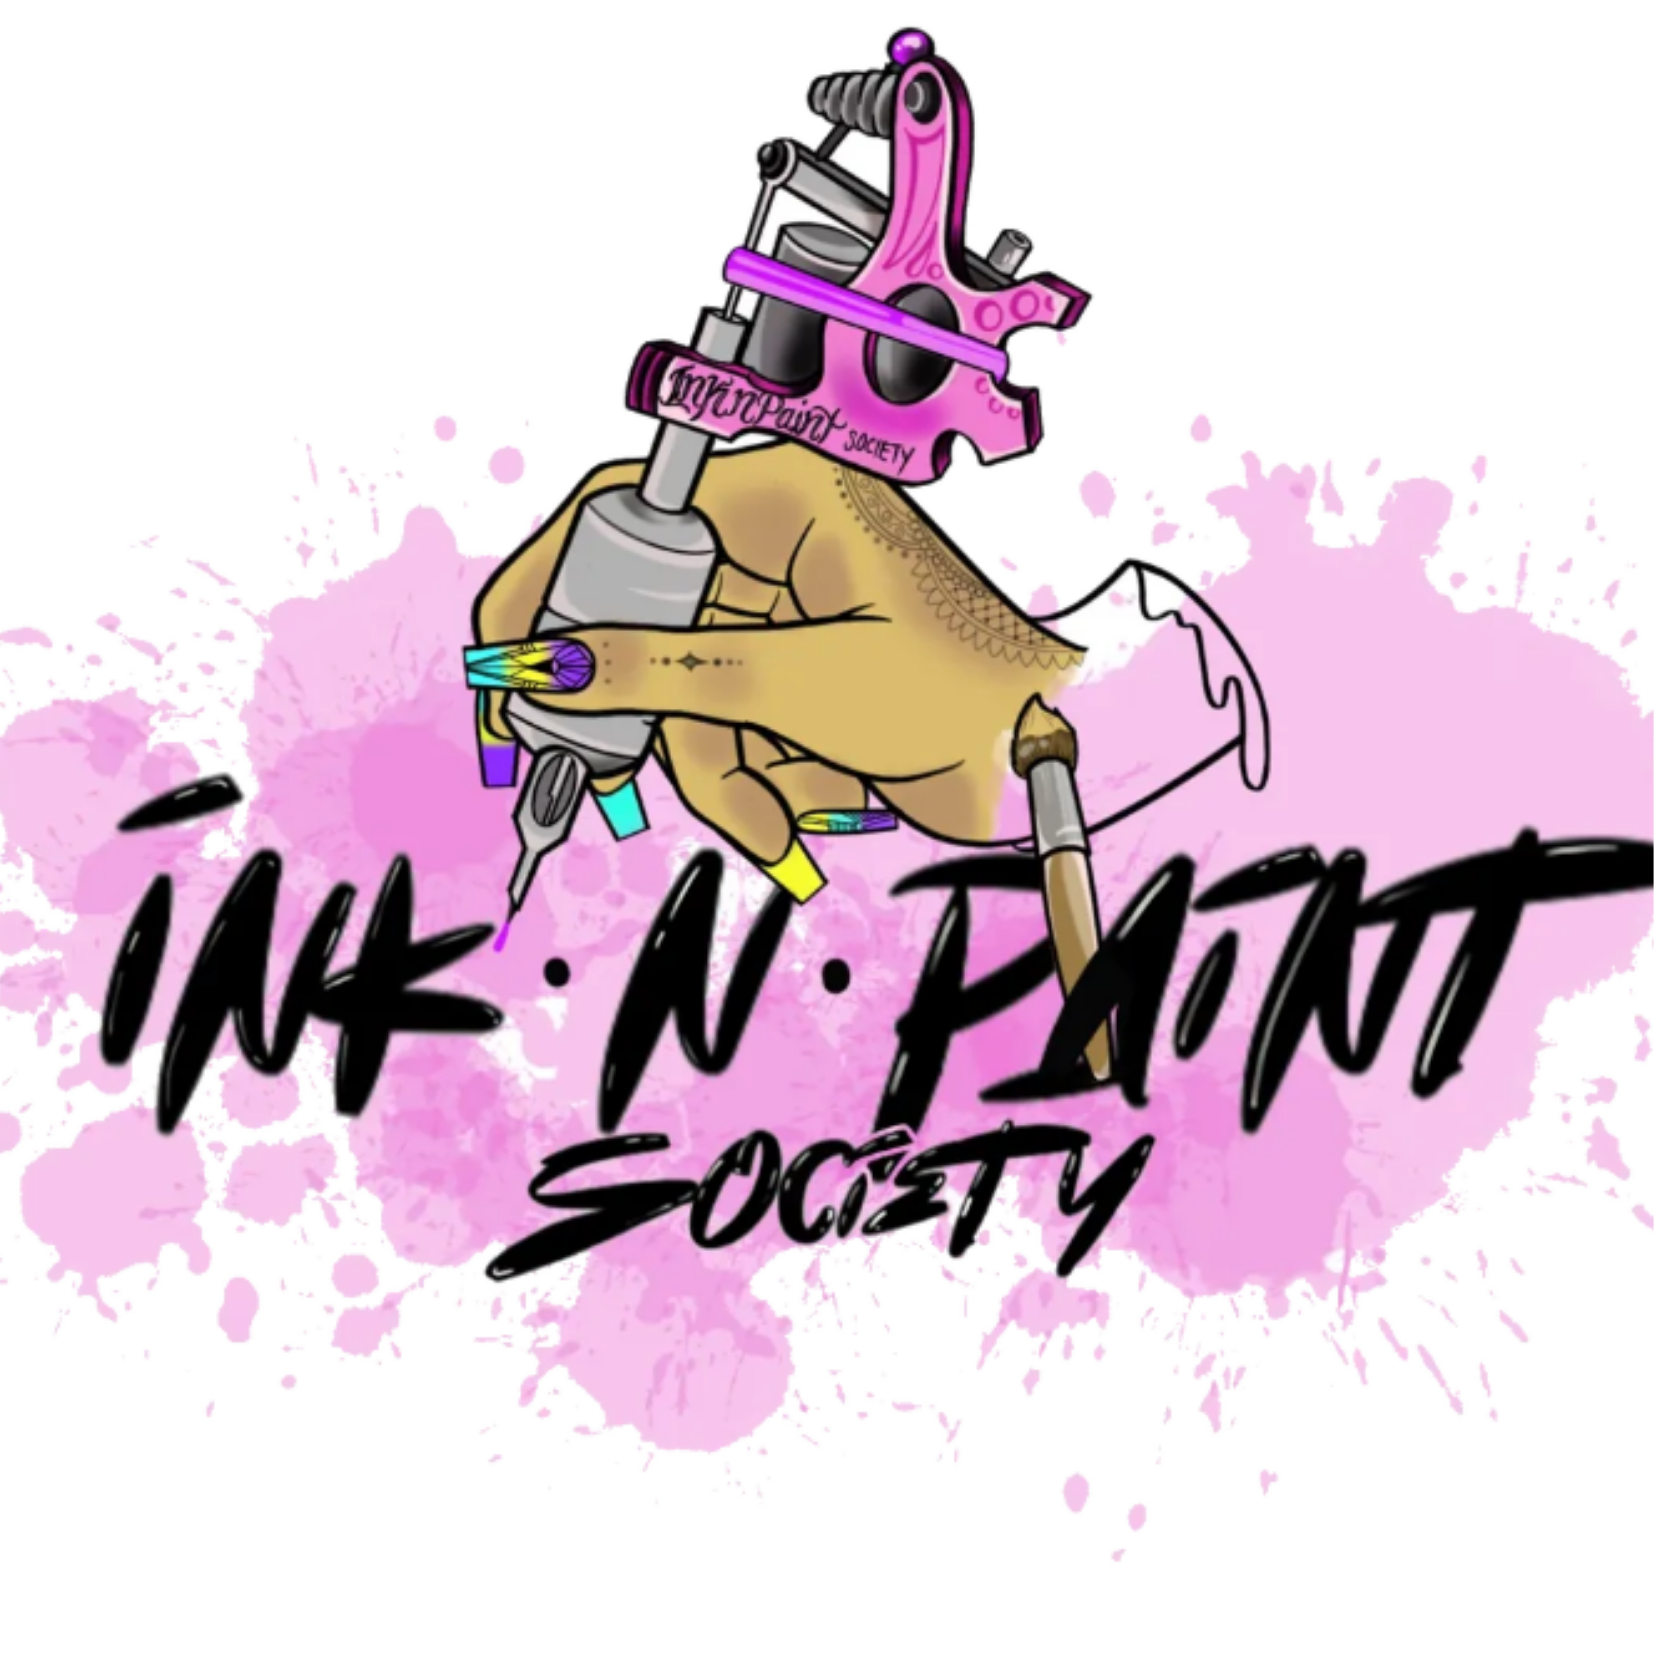 Ink N Paint Society (Sponsor)